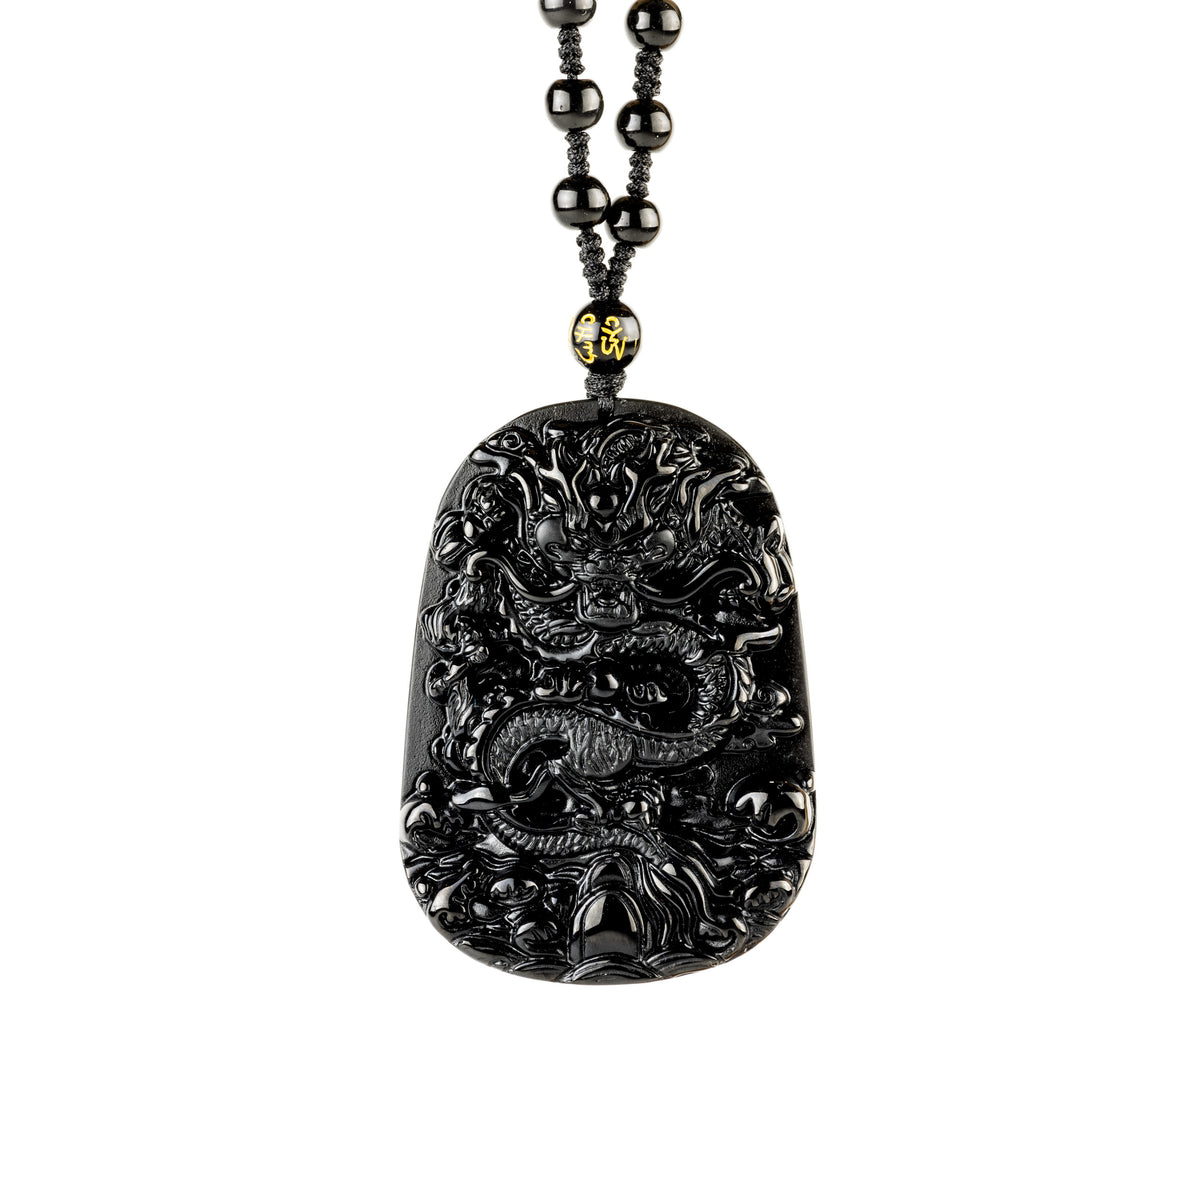 Colgante en relieve con patrón de dragón de obsidiana: poder, elegancia, herencia